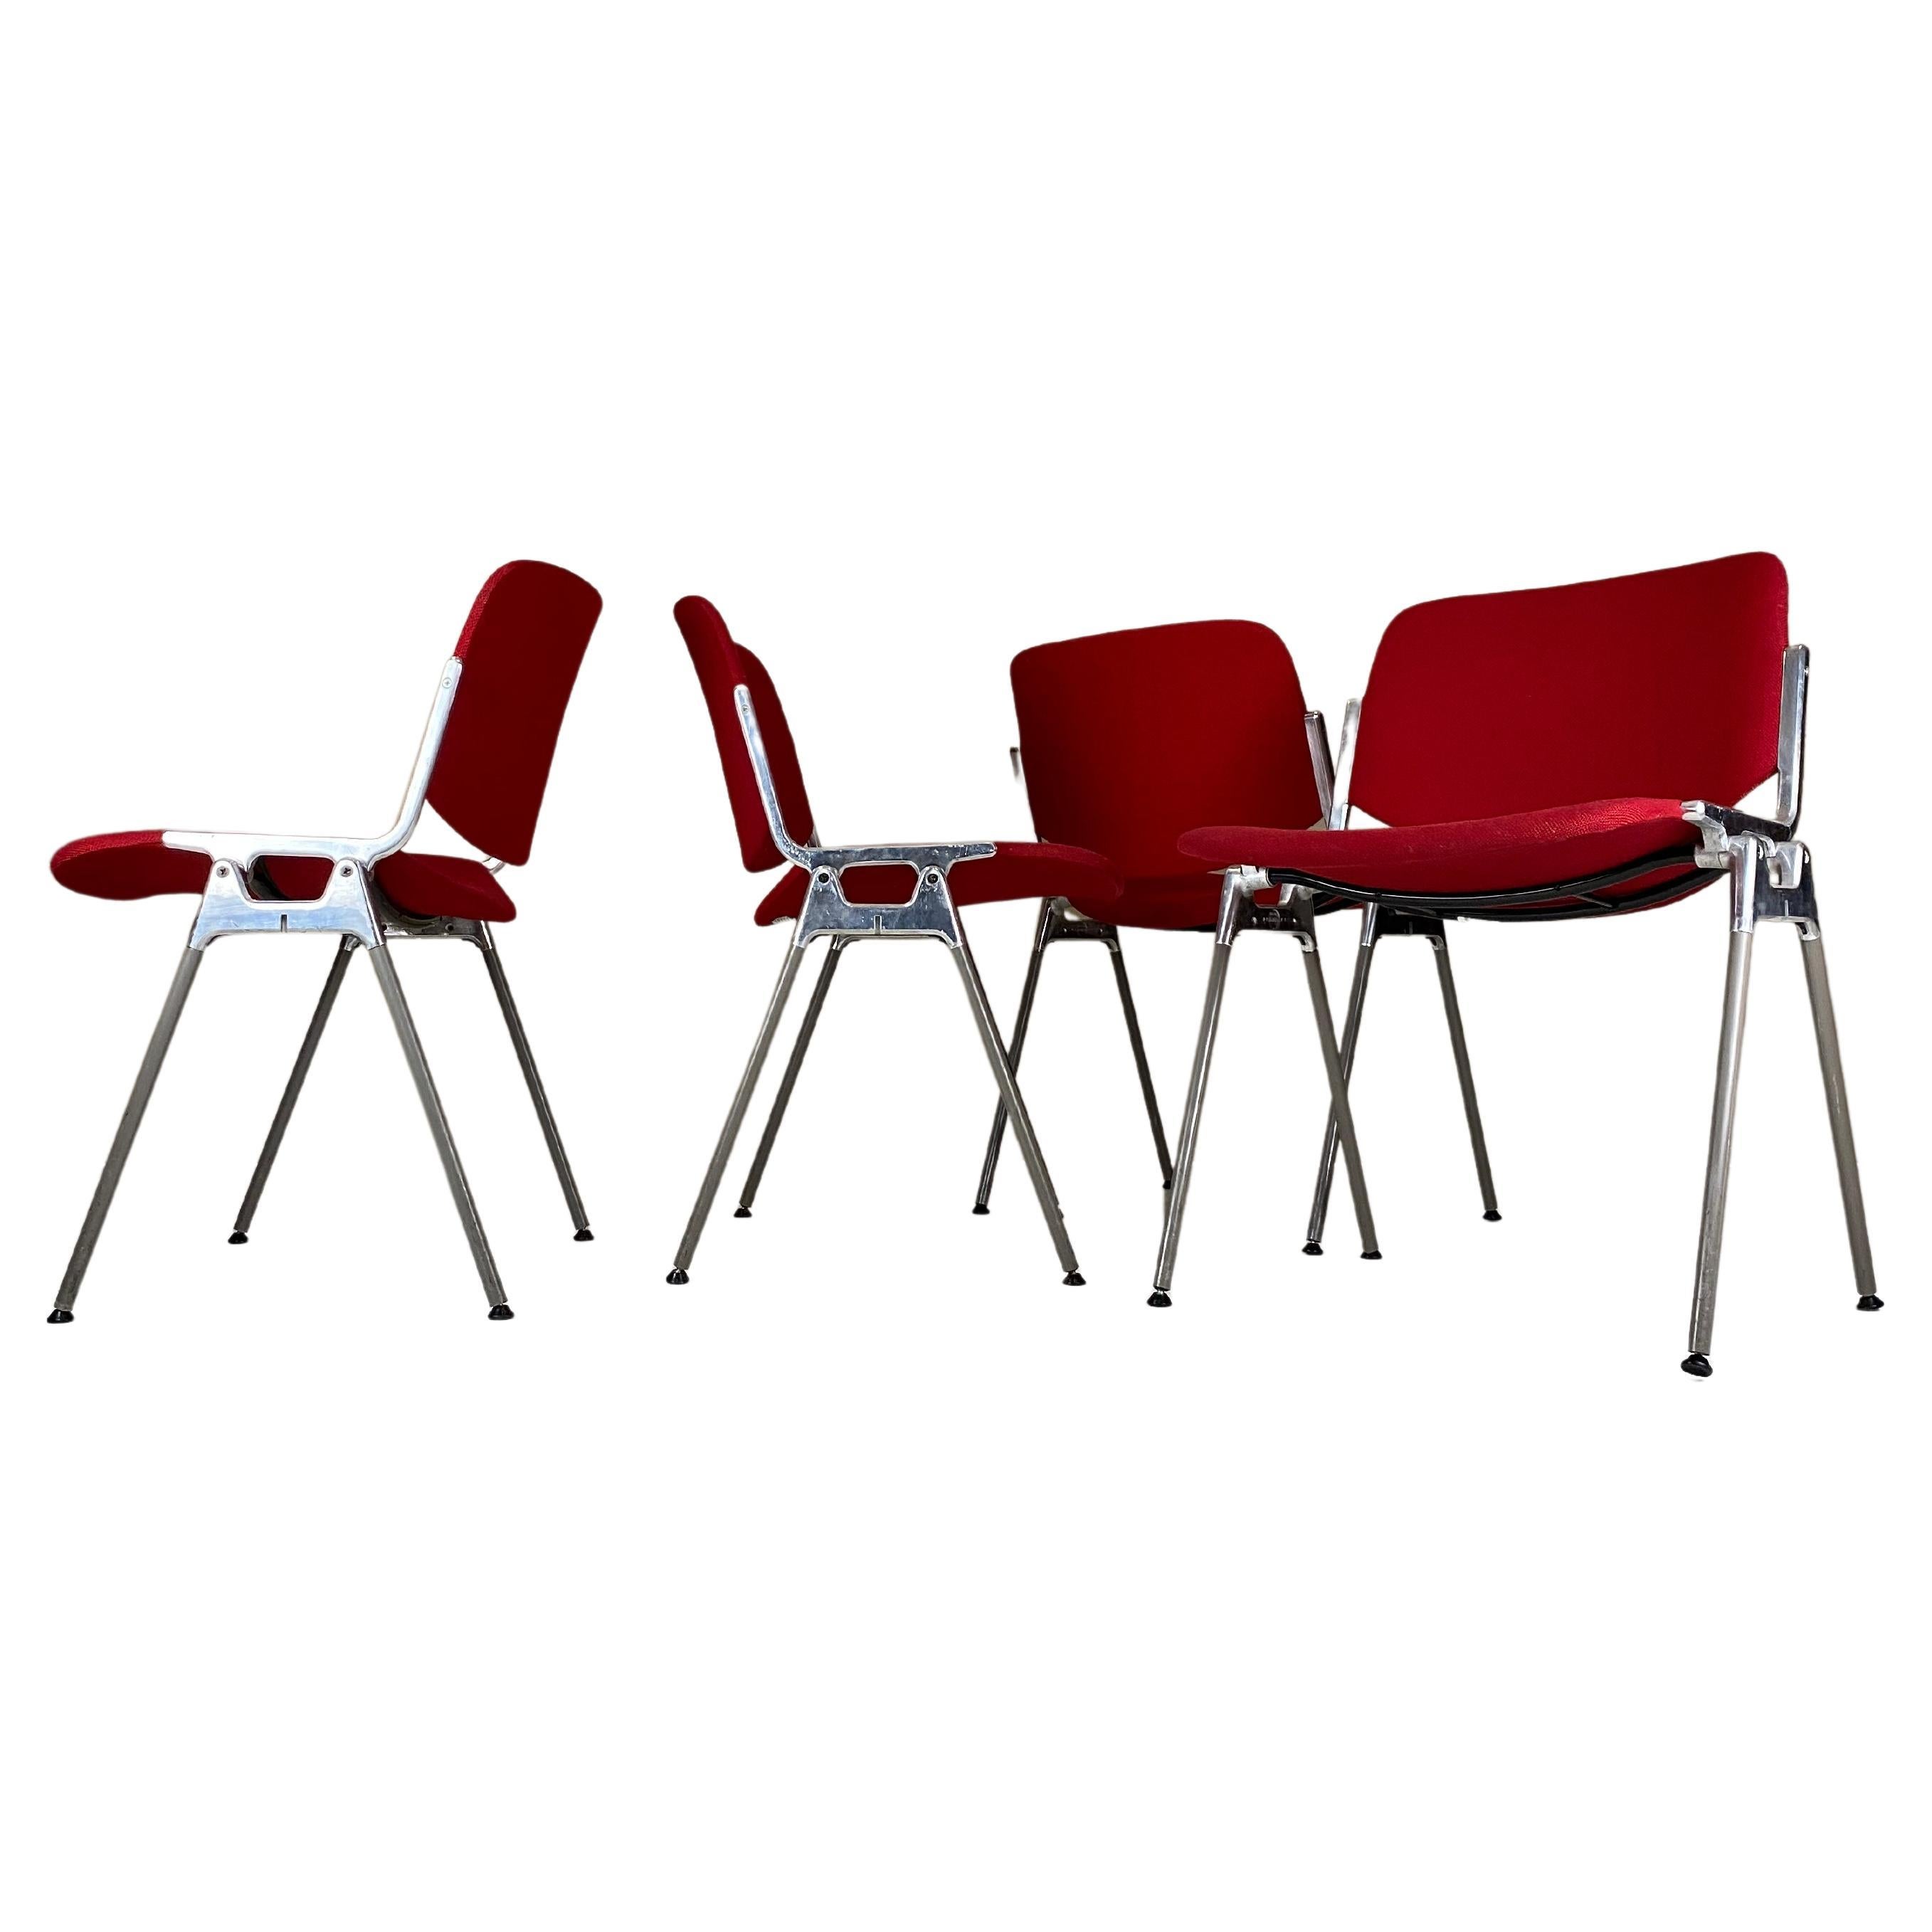 Ensemble de 4 chaises empilables Anonima Castelli DSC-106 de Giancarlo Piretti, années 1960